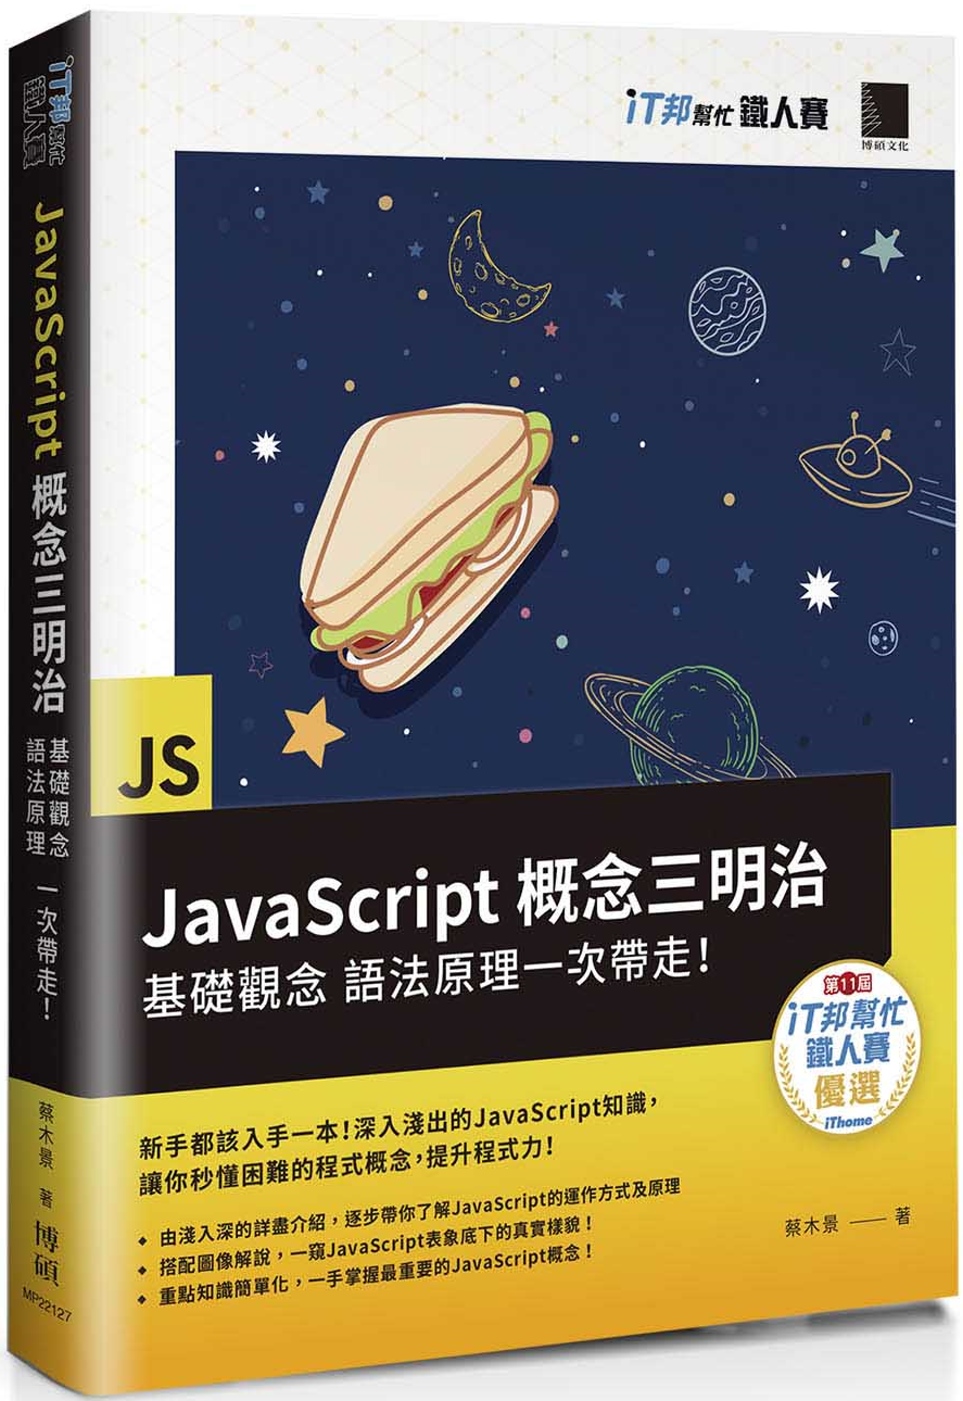 JavaScript概念三明治：基礎觀念、語法原理一次帶走！...